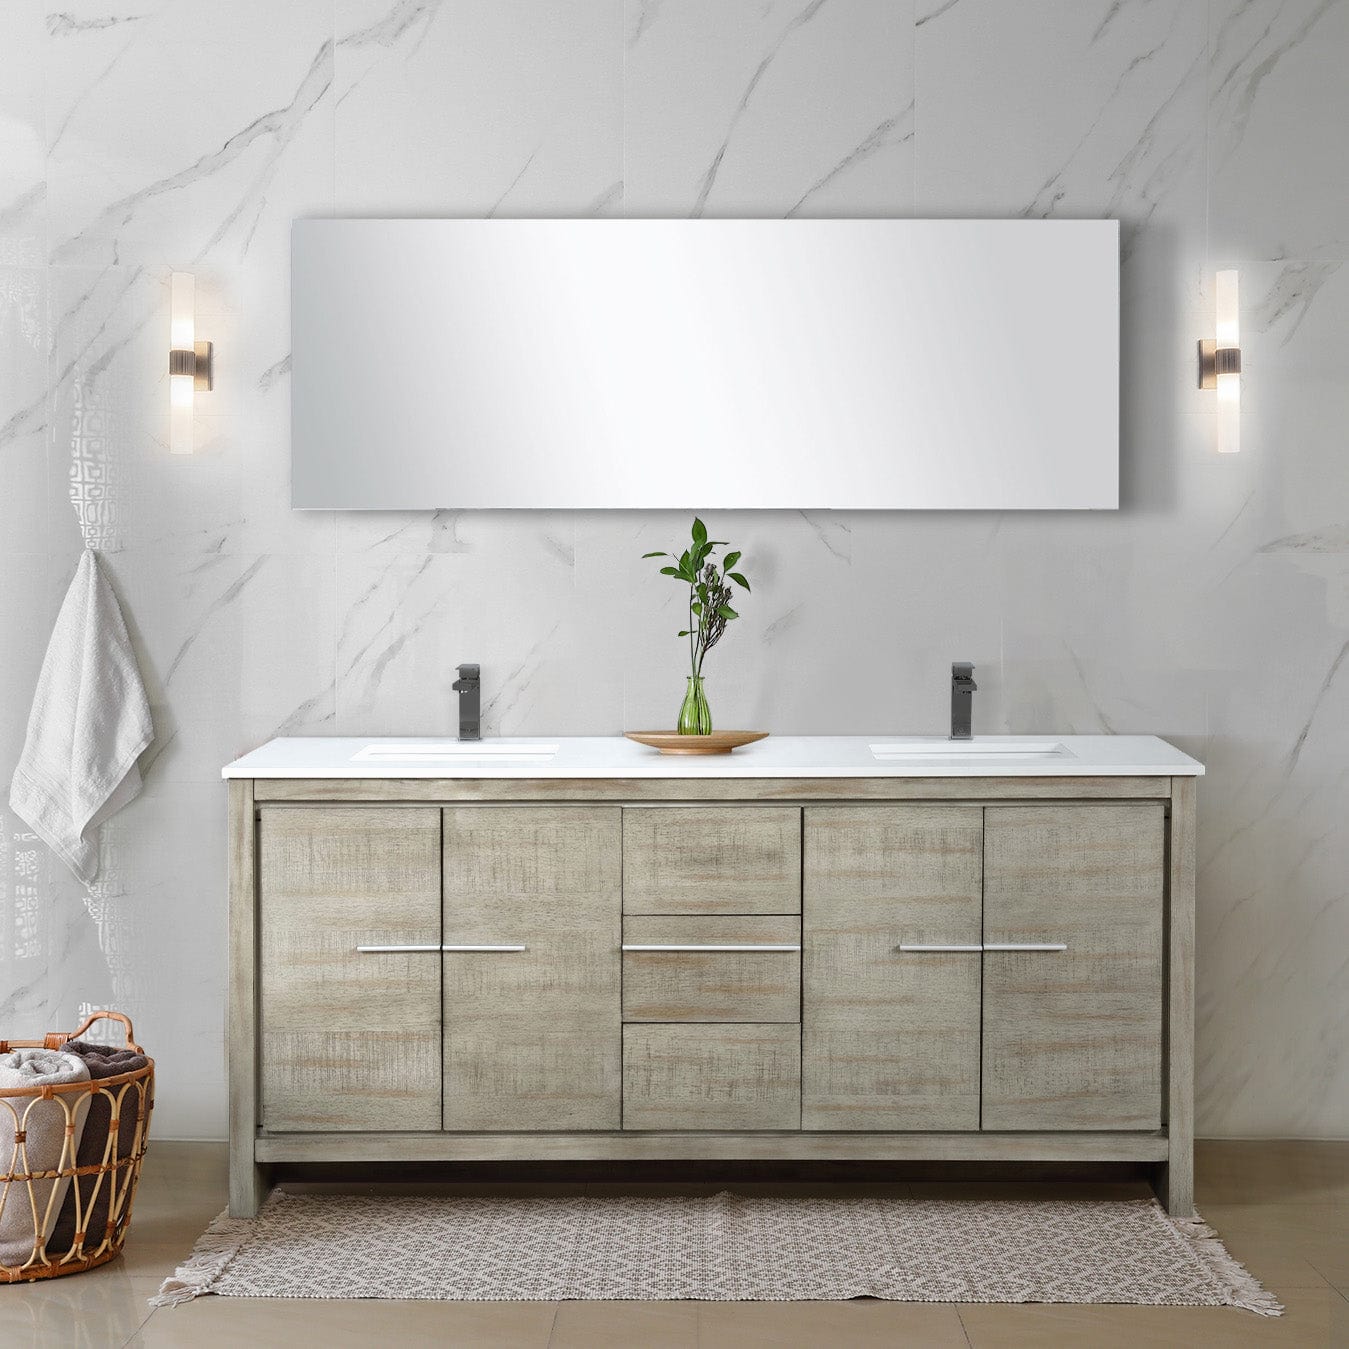 Lexora Bathroom Vanity Cultured Marble / Gun Metal Faucet / No Mirror Lafarre 72" Rustic Acacia Double Bathroom Vanity